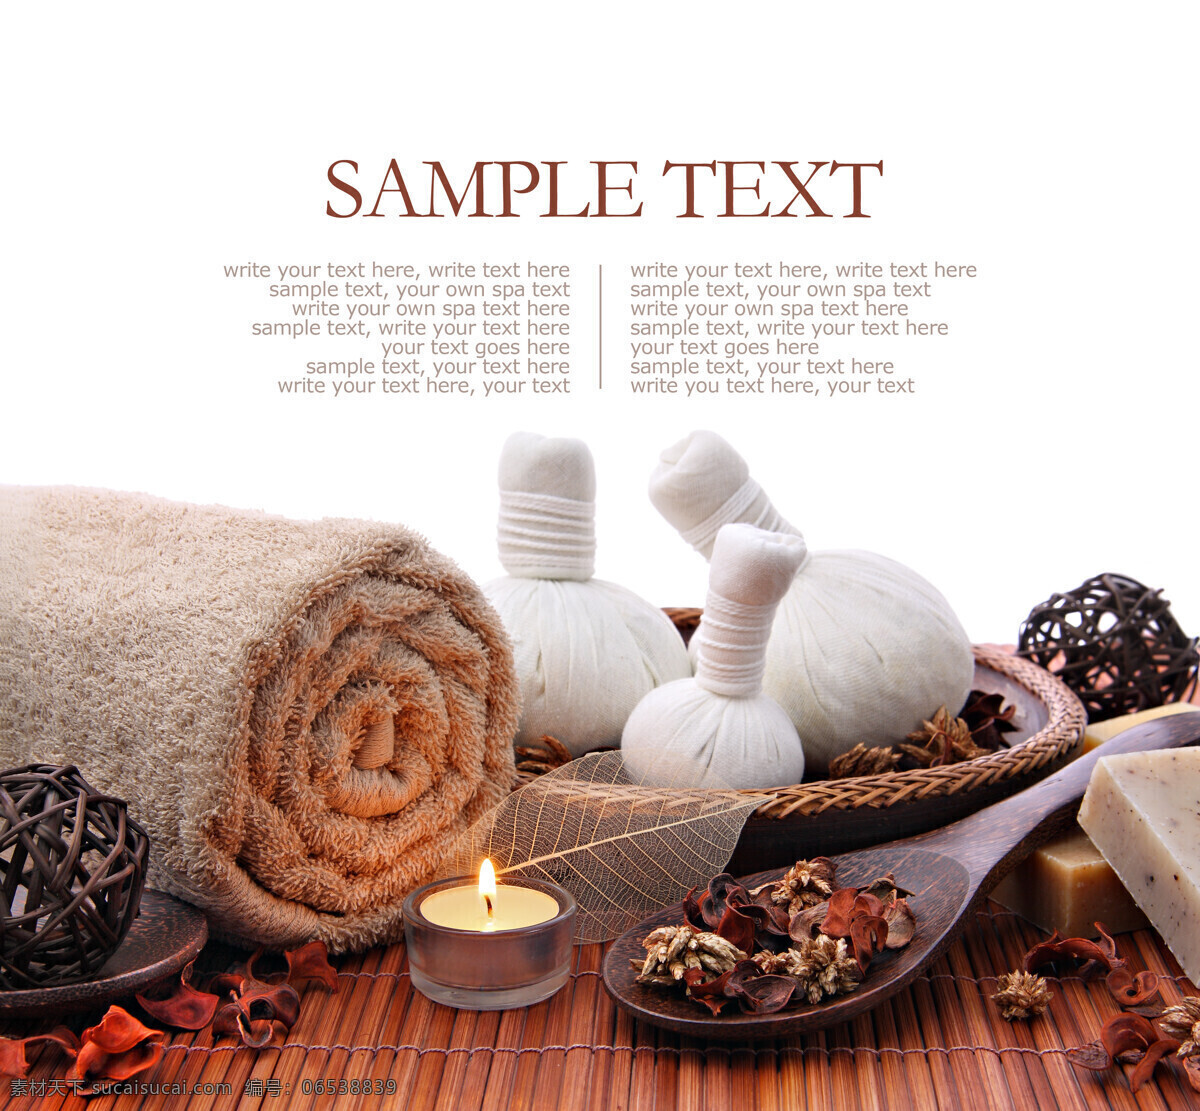 spa 水疗 用品 毛巾 蜡烛 香料 肥皂 生活用品 生活百科